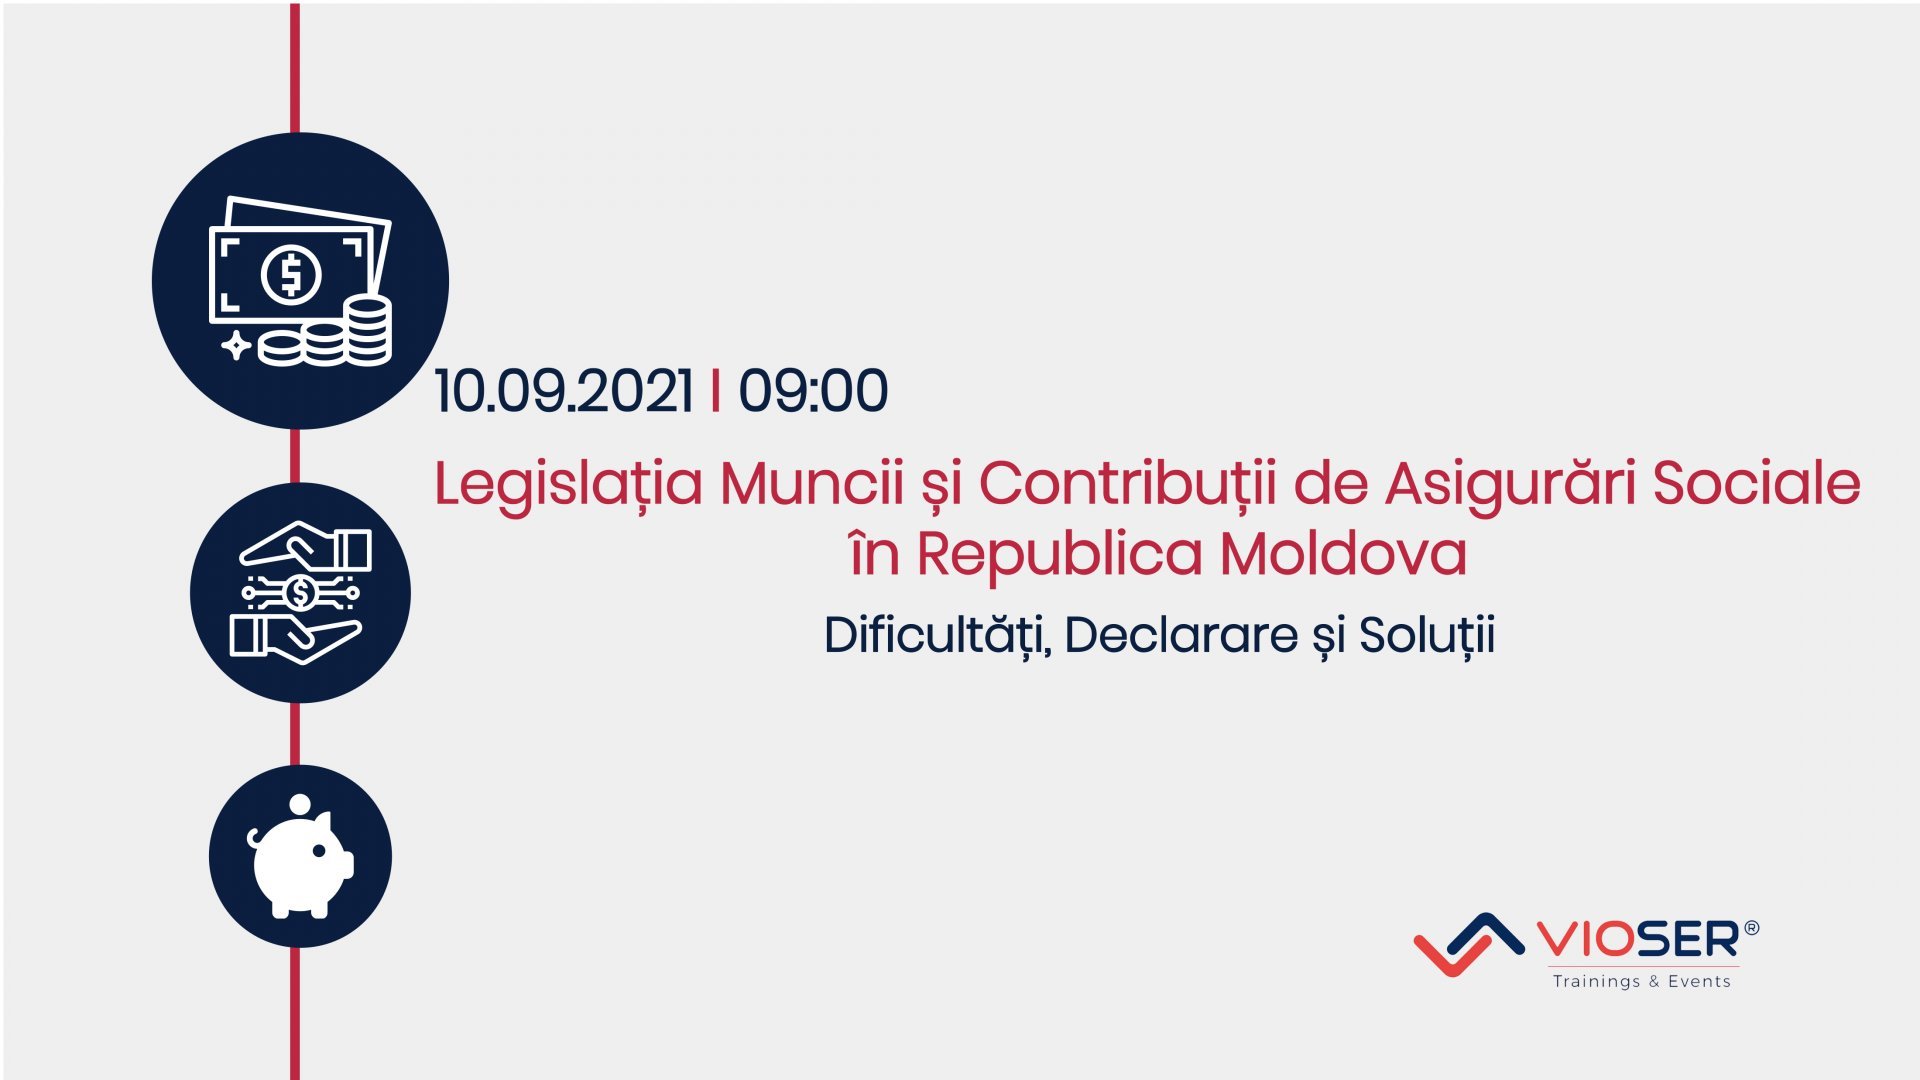 Legislația muncii și contribuții de asigurări sociale in Republica Moldova. Dificultăți, Declarare și Soluții